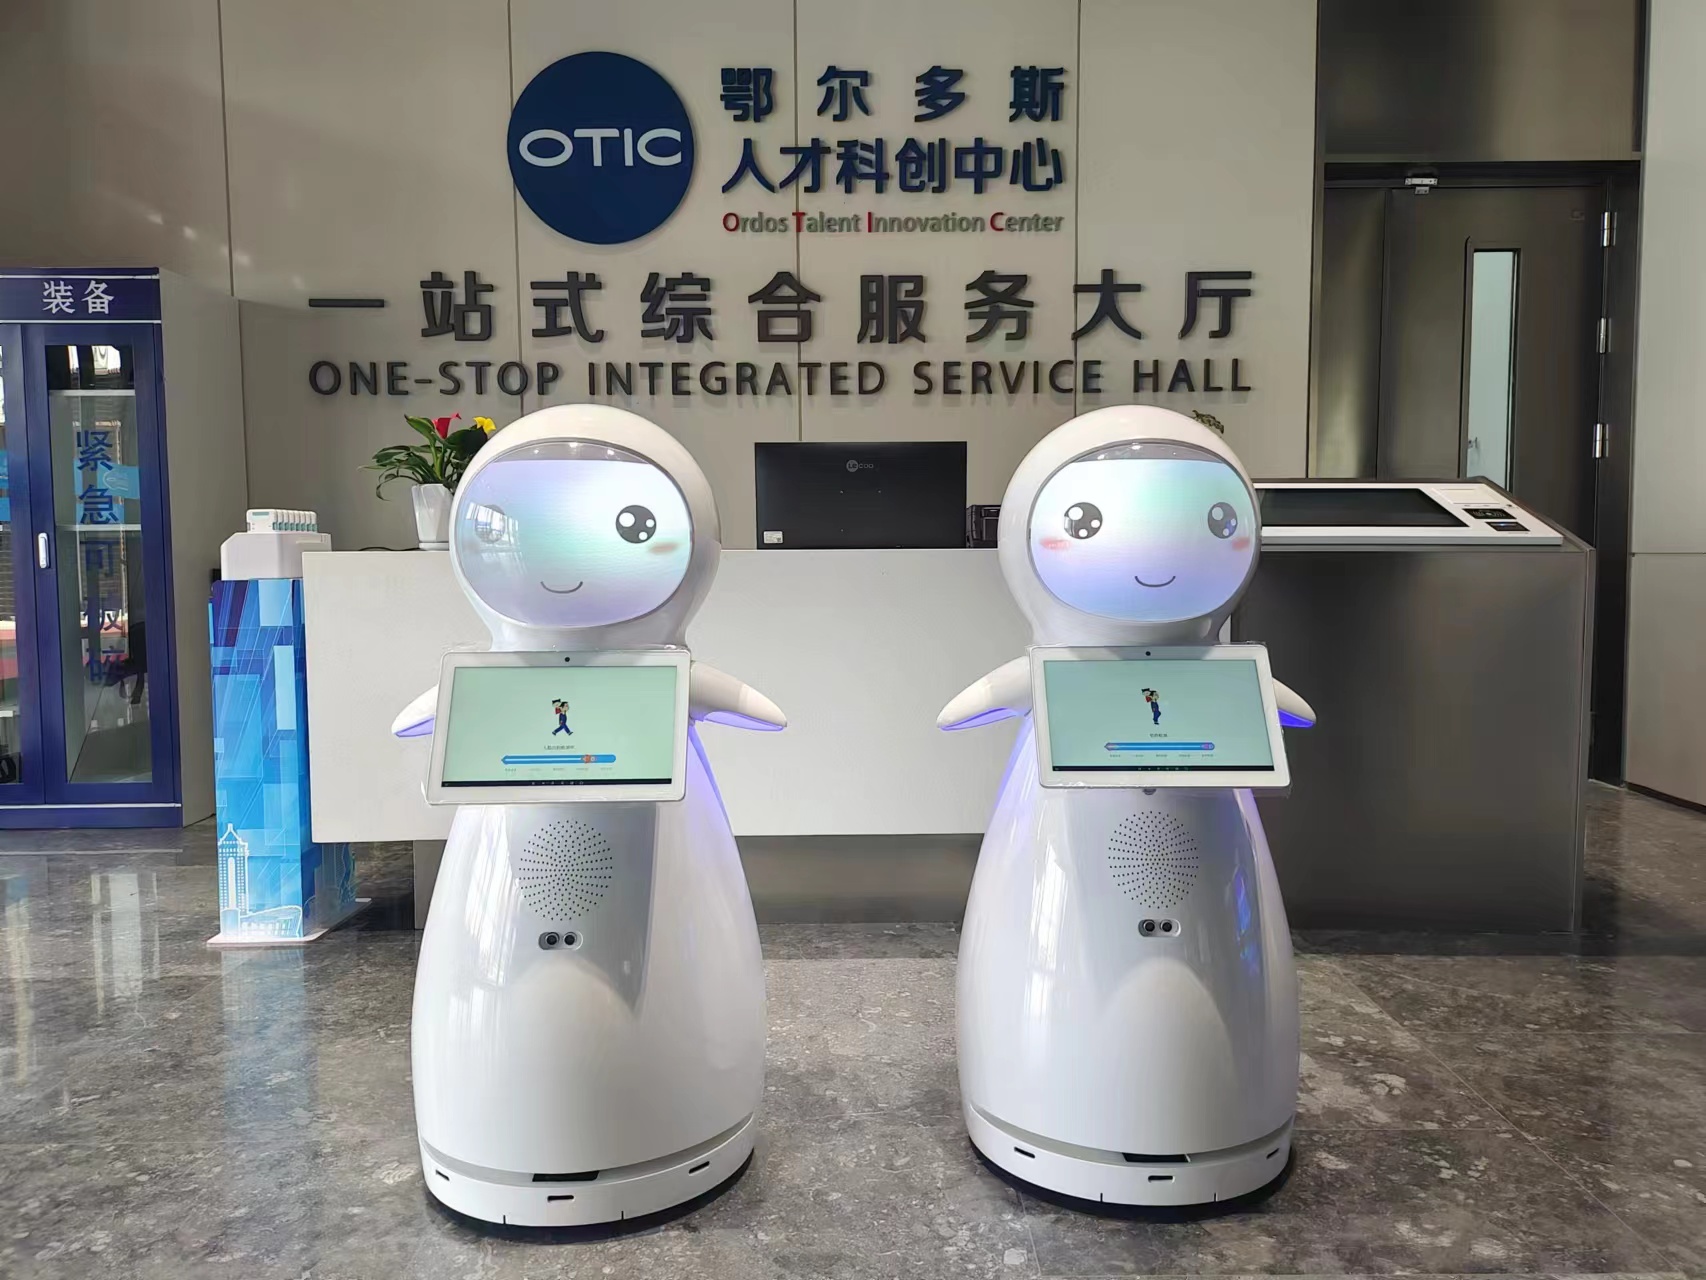 ساعد روبوت الثلج في الإطلاق الرسمي لـ "مركز Erdos Talent Science and Technology Innovation Center"!